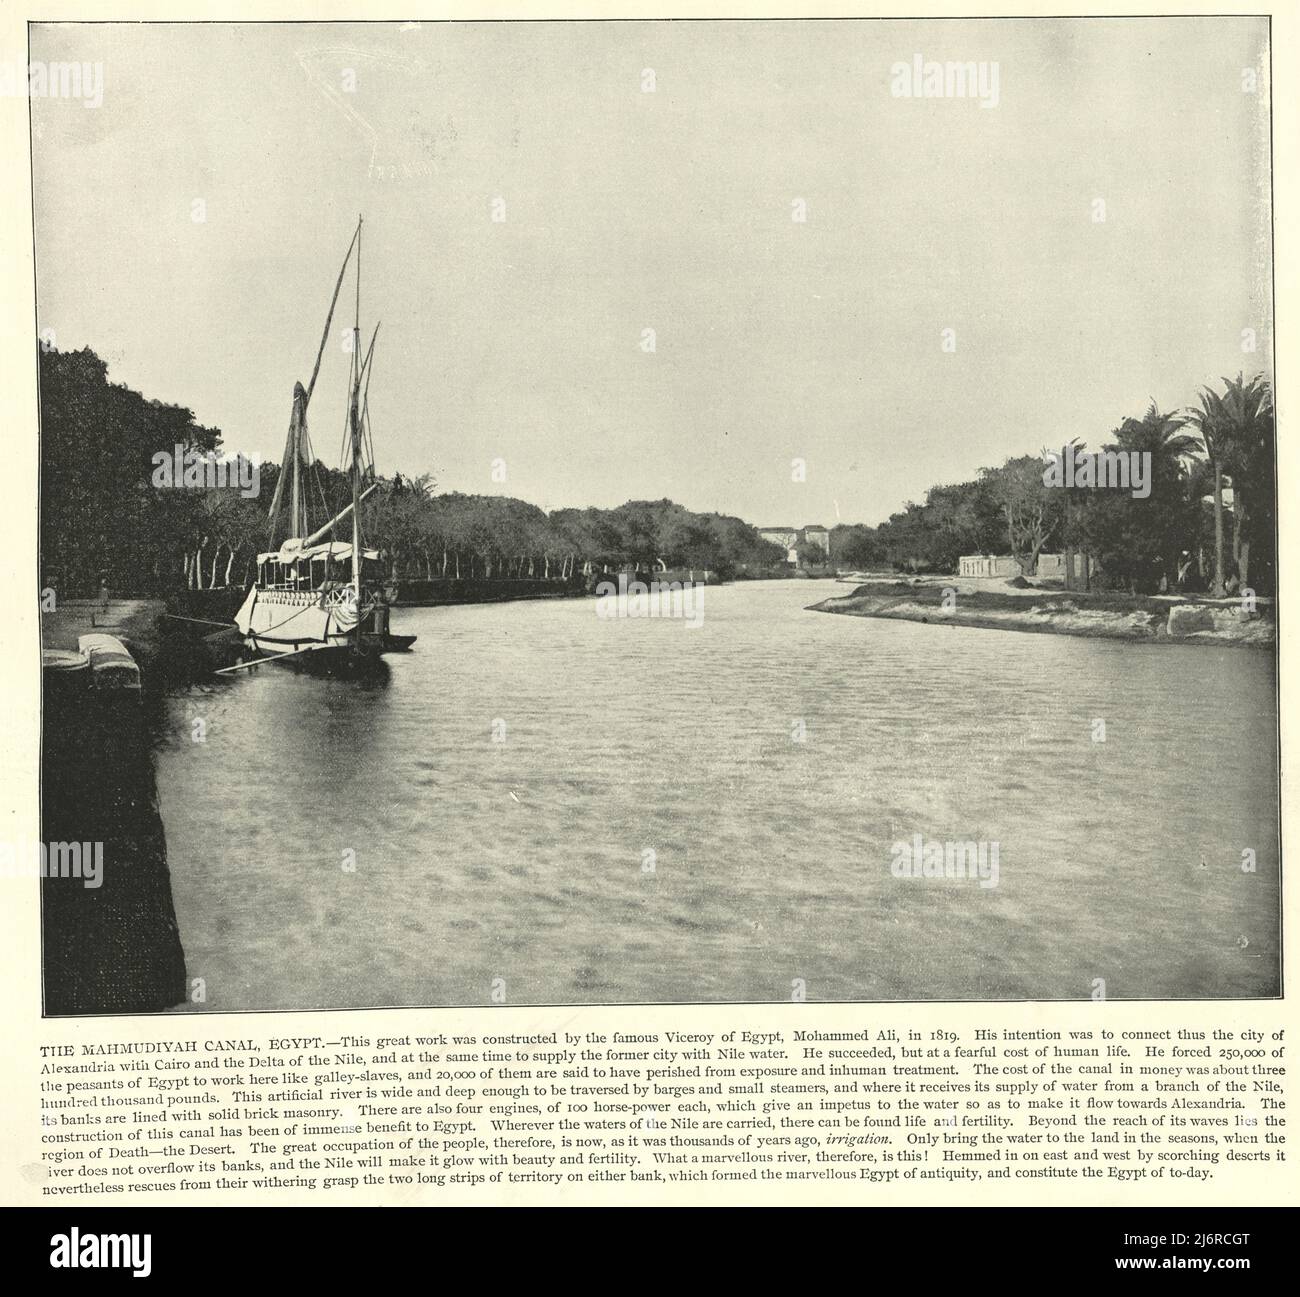 Vintage-Fotografie des Mahmoudiyah-Kanals, einem 45 Meilen langen (72 km) langen Unterkanal vom Nil, der am Nil-Hafen von Mahmoudia beginnt und durch Alexandria bis zum Mittelmeer führt. 19. Jahrhundert Stockfoto